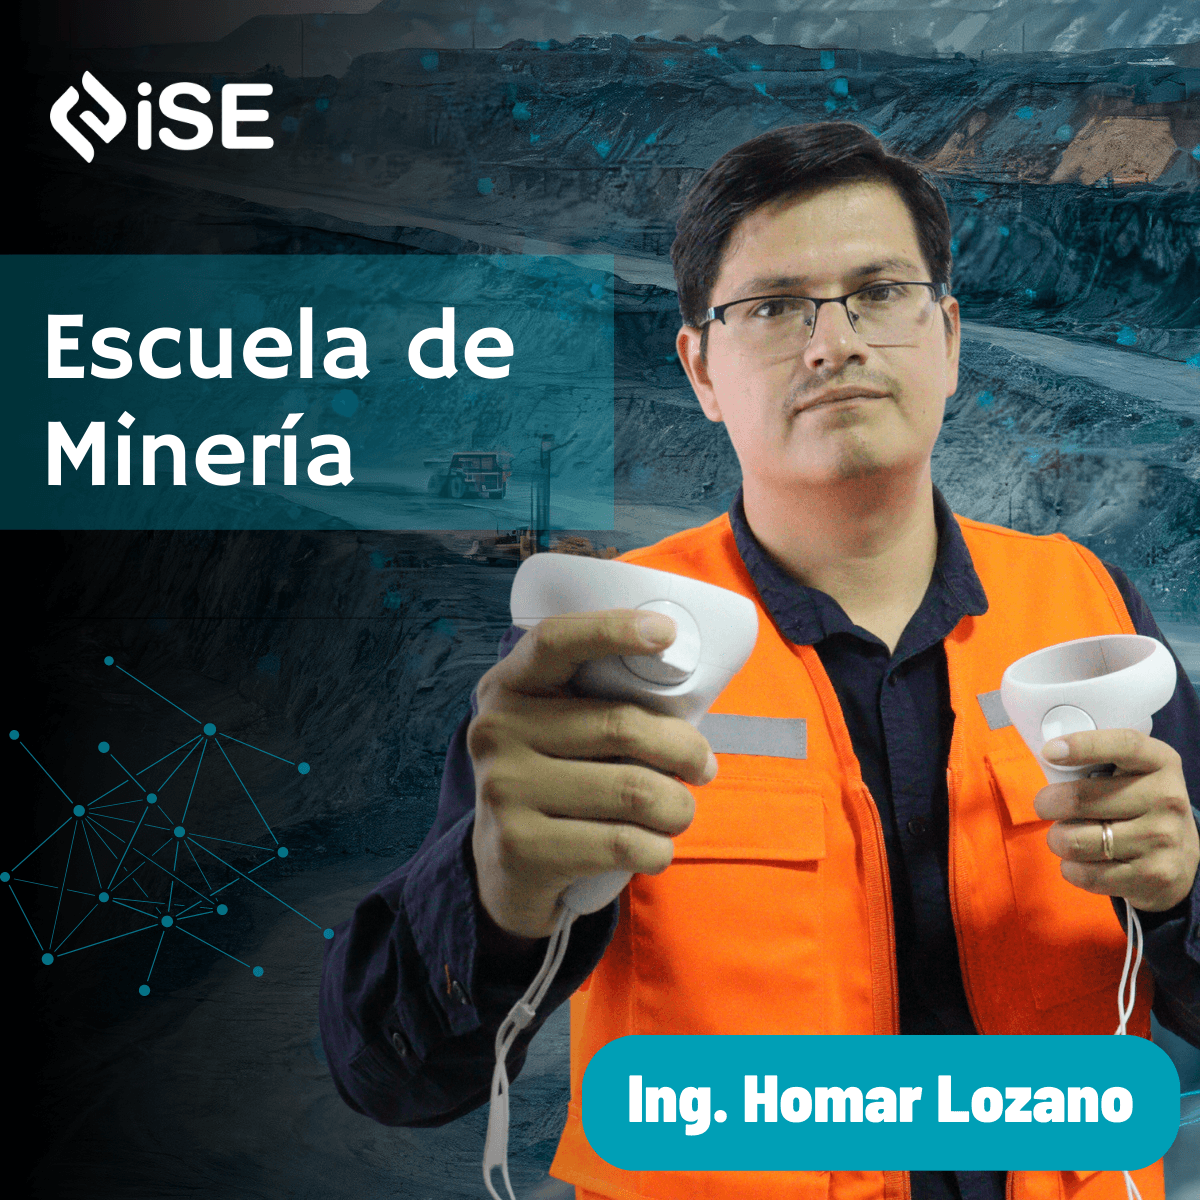 Escuela iSE del Ing. Homar Lozano